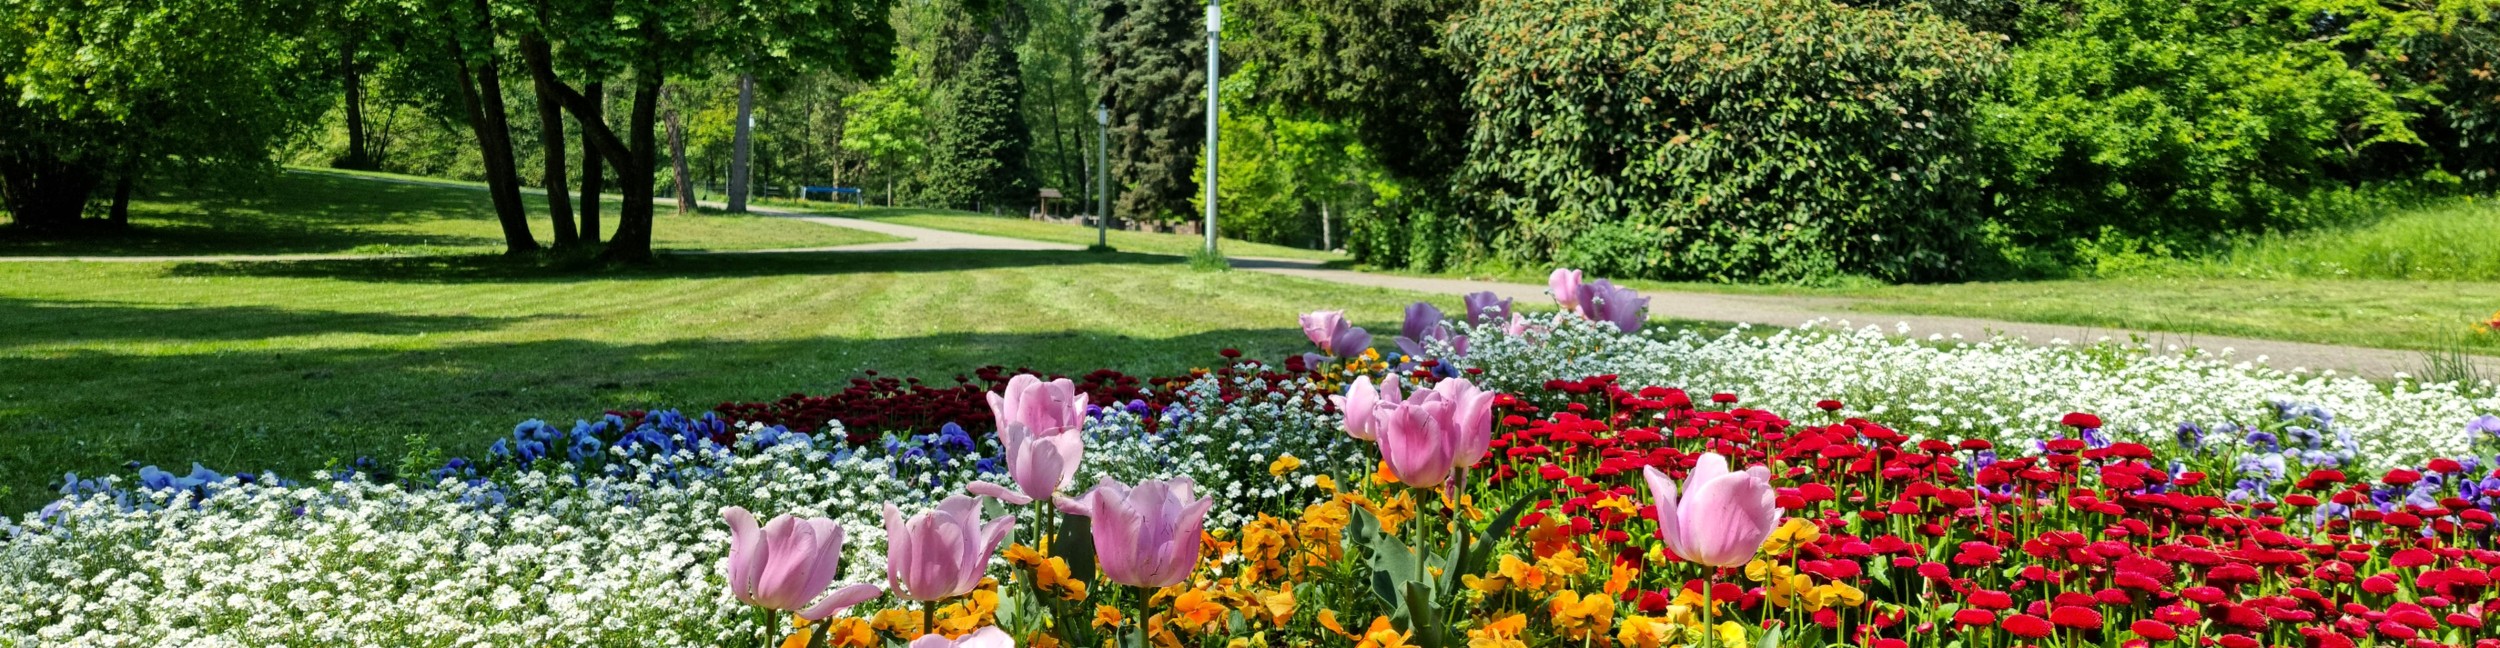 Parcs de la ville Parterre de fleurs au premier plan avec le parc en arrière-plan